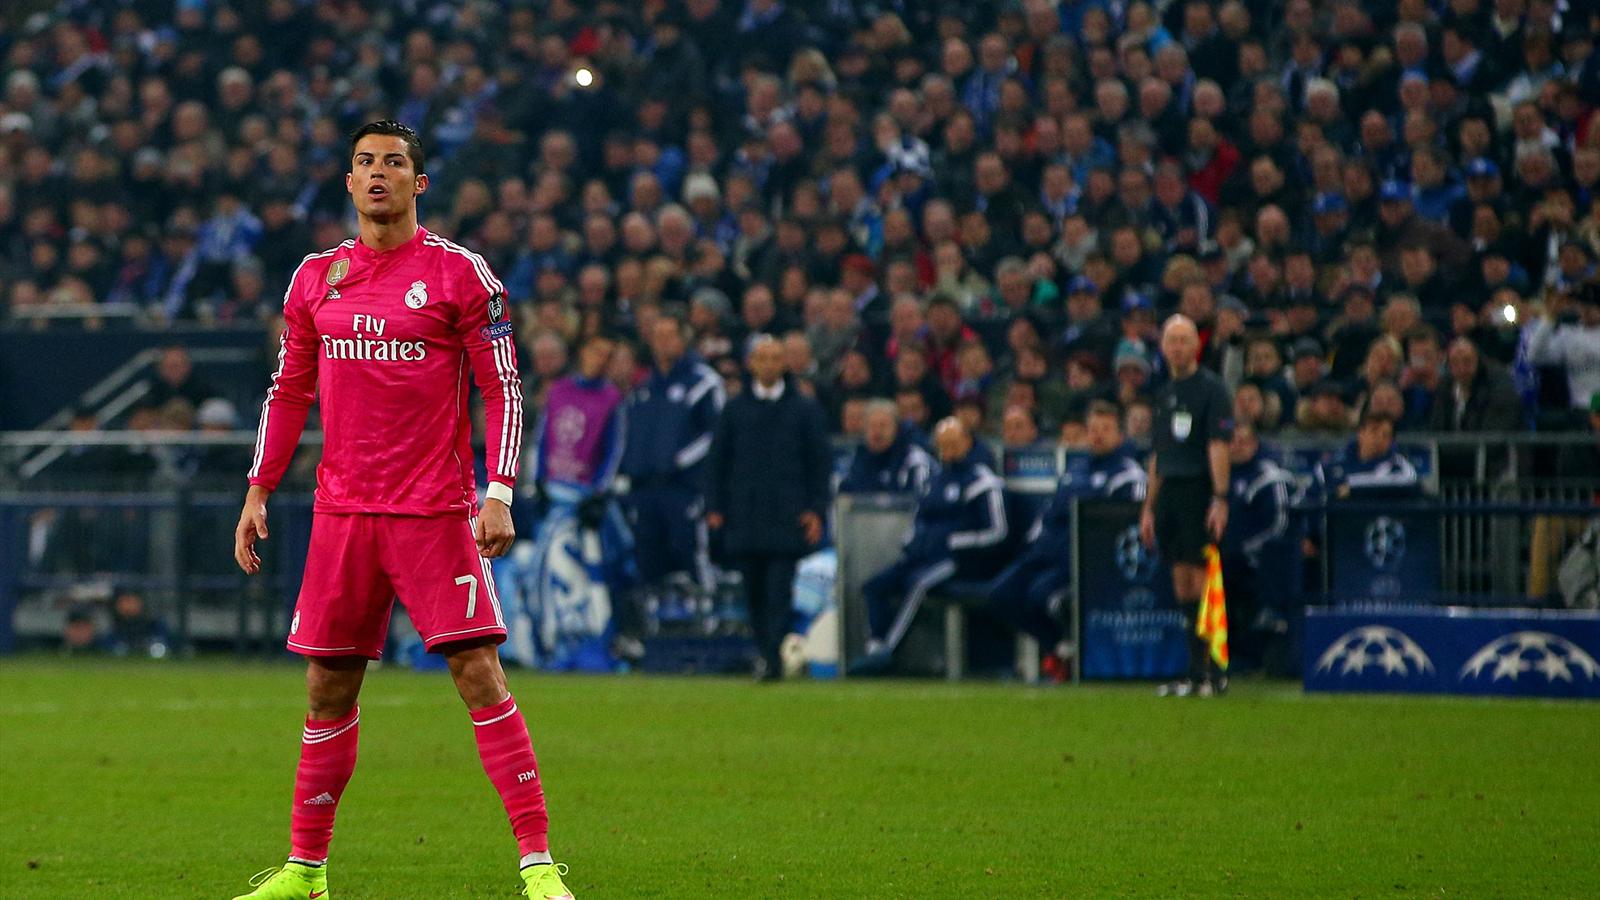 Nike menace de rompre le contrat de Cristiano Ronaldo : ce serait se tirer une balle dans le pied